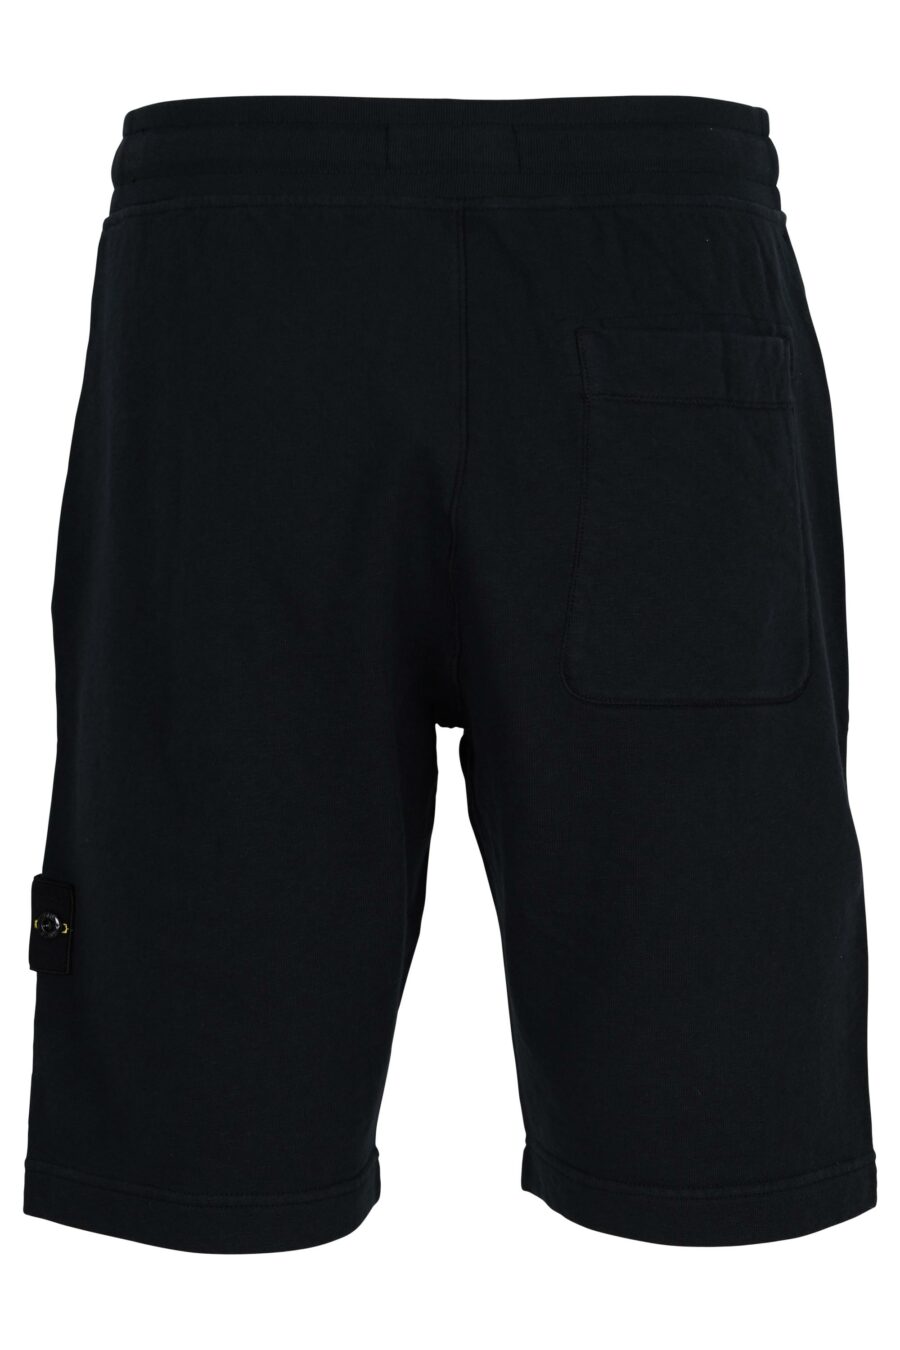 Pantalón de chándal corto azul oscuro con logo parche brújula - 8052572905575 1